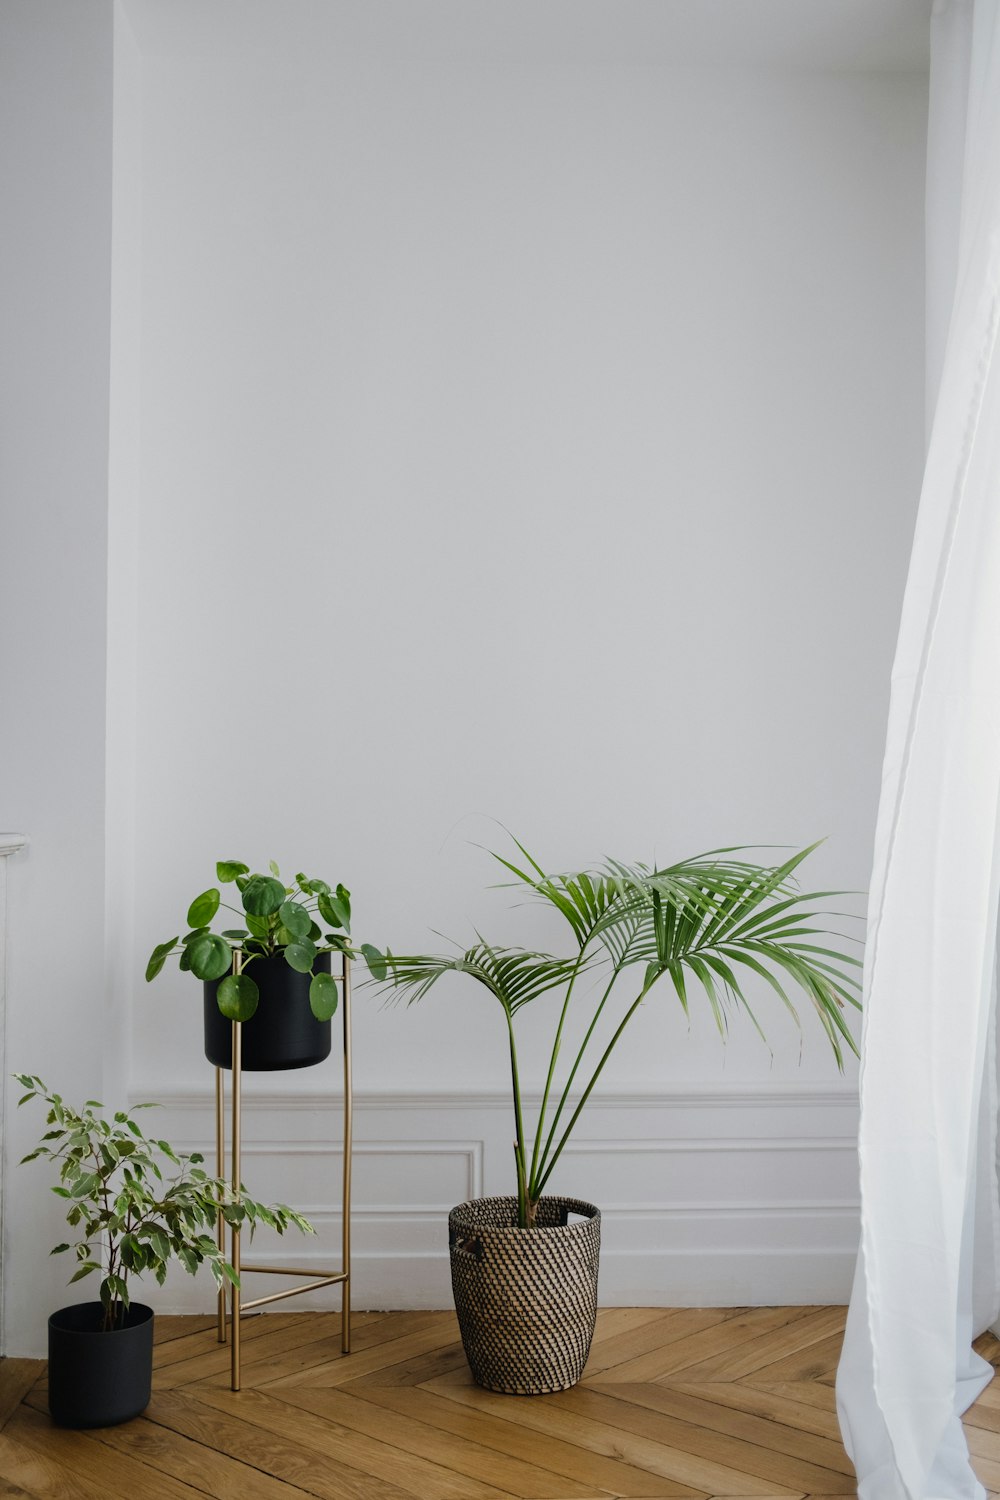 pianta in vaso verde accanto al muro bianco